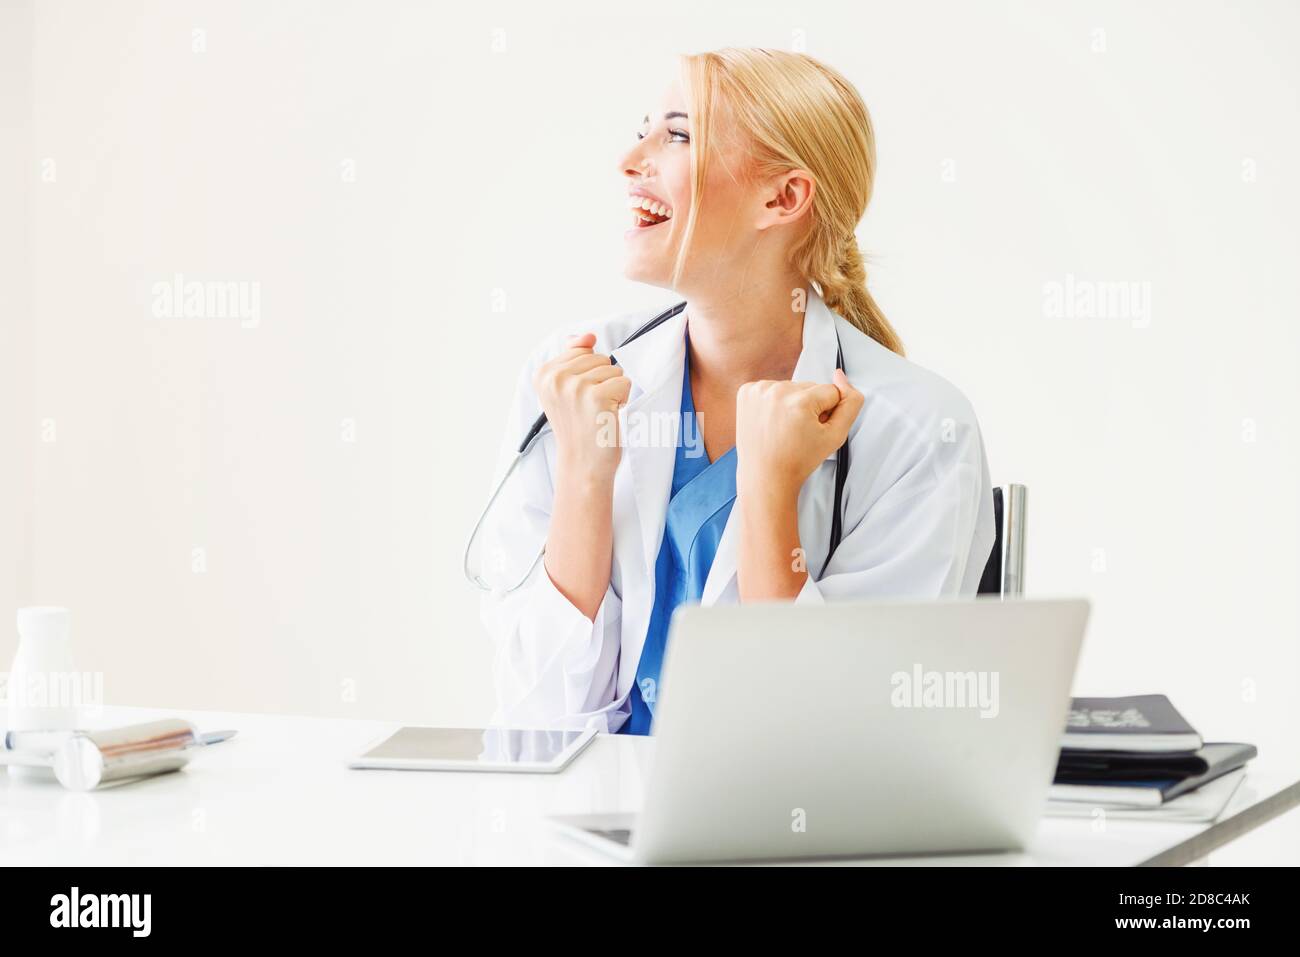 Gerne erfolgreiche Frau Doktor fühlt sich herrlich im Krankenhaus oder medizinisches Institut während der Arbeit an medizinischen Bericht im Büro. Erfolg Konzept. Stockfoto